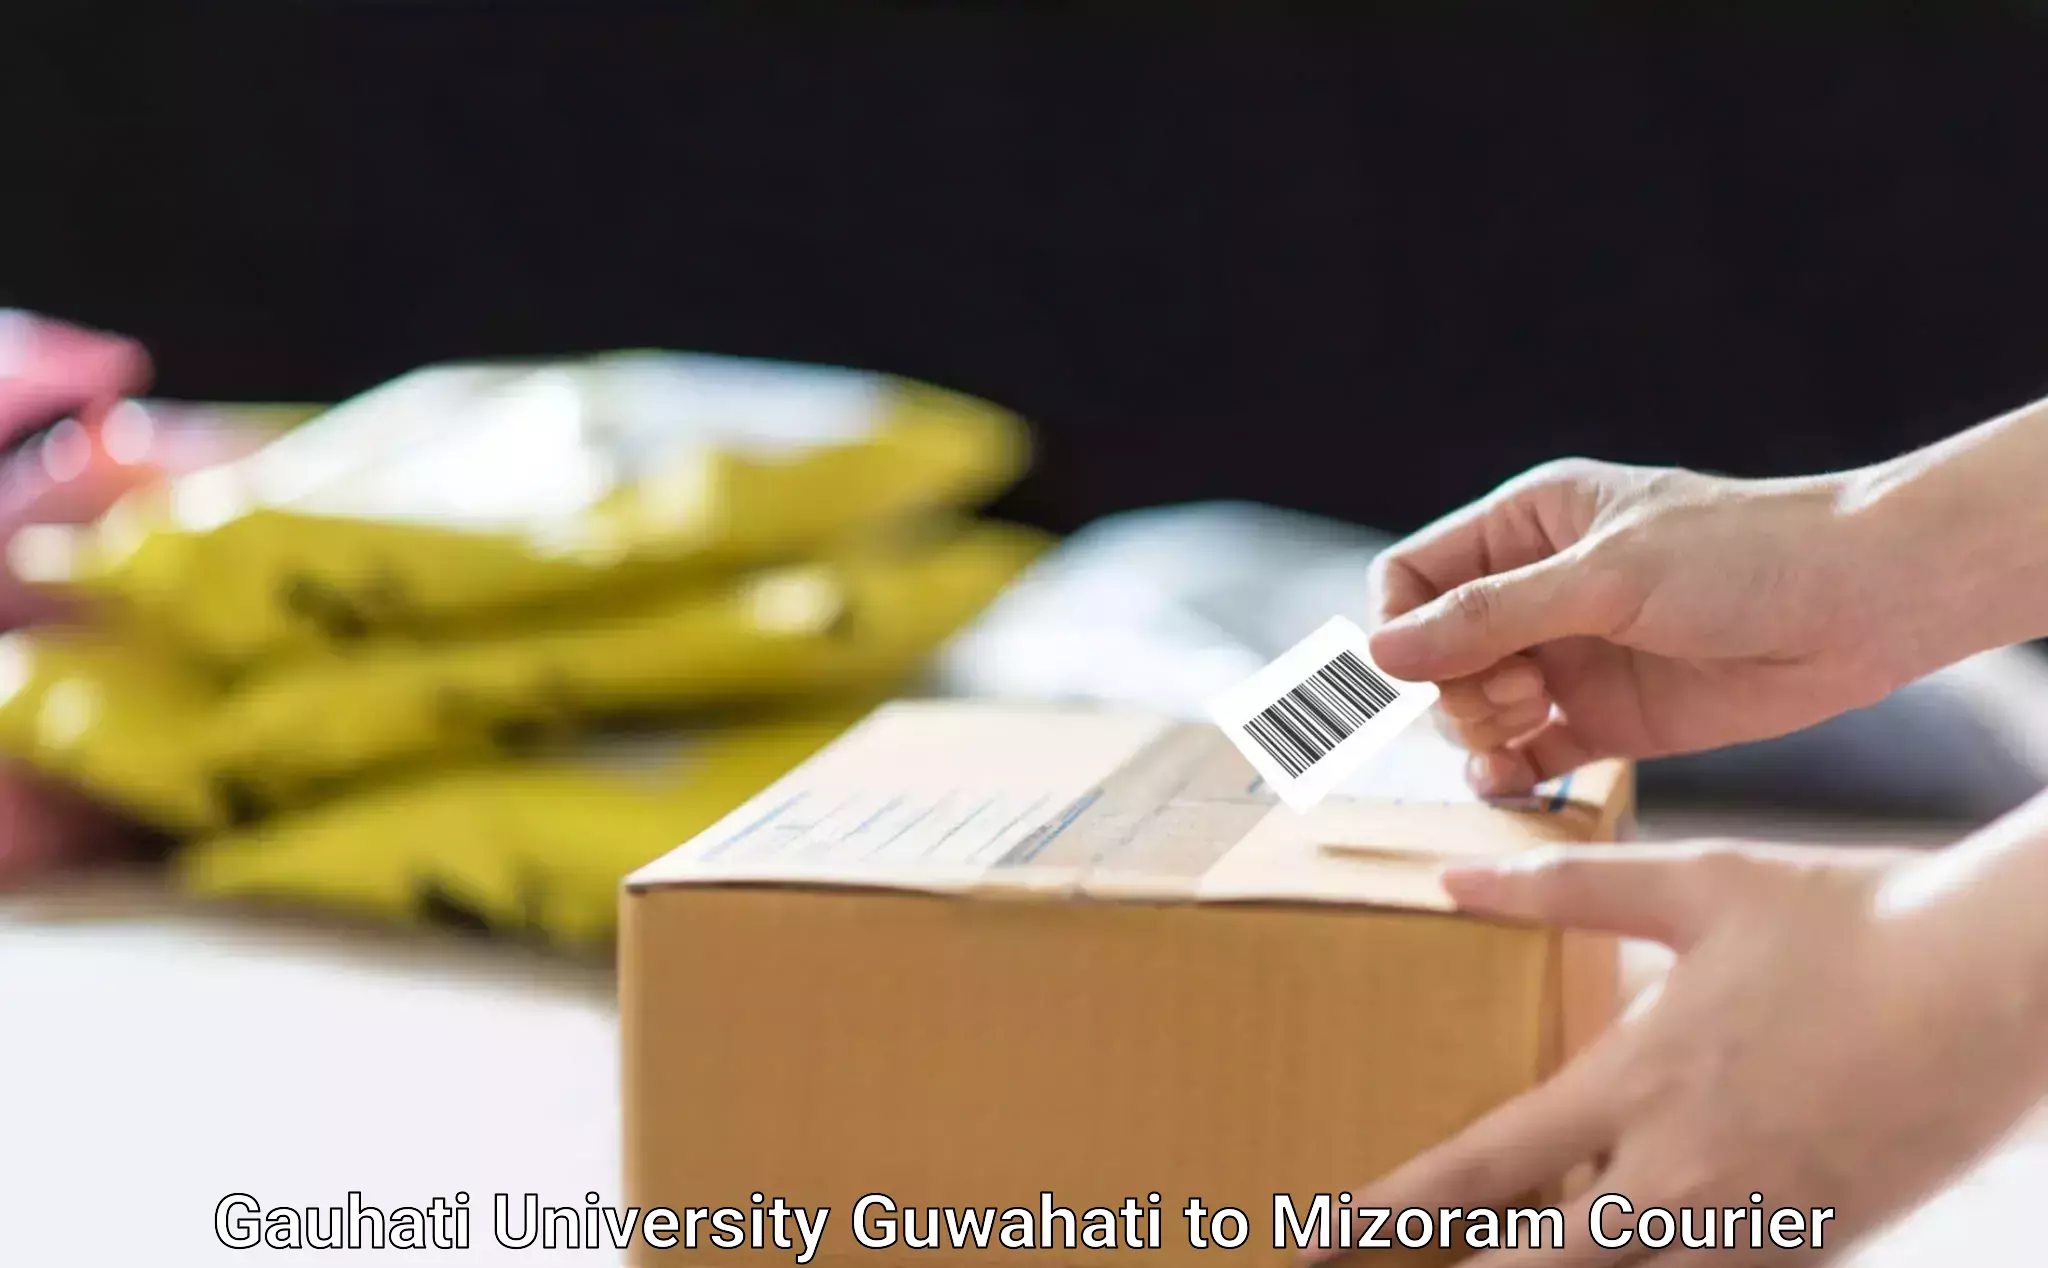 Express courier capabilities Gauhati University Guwahati to Mizoram